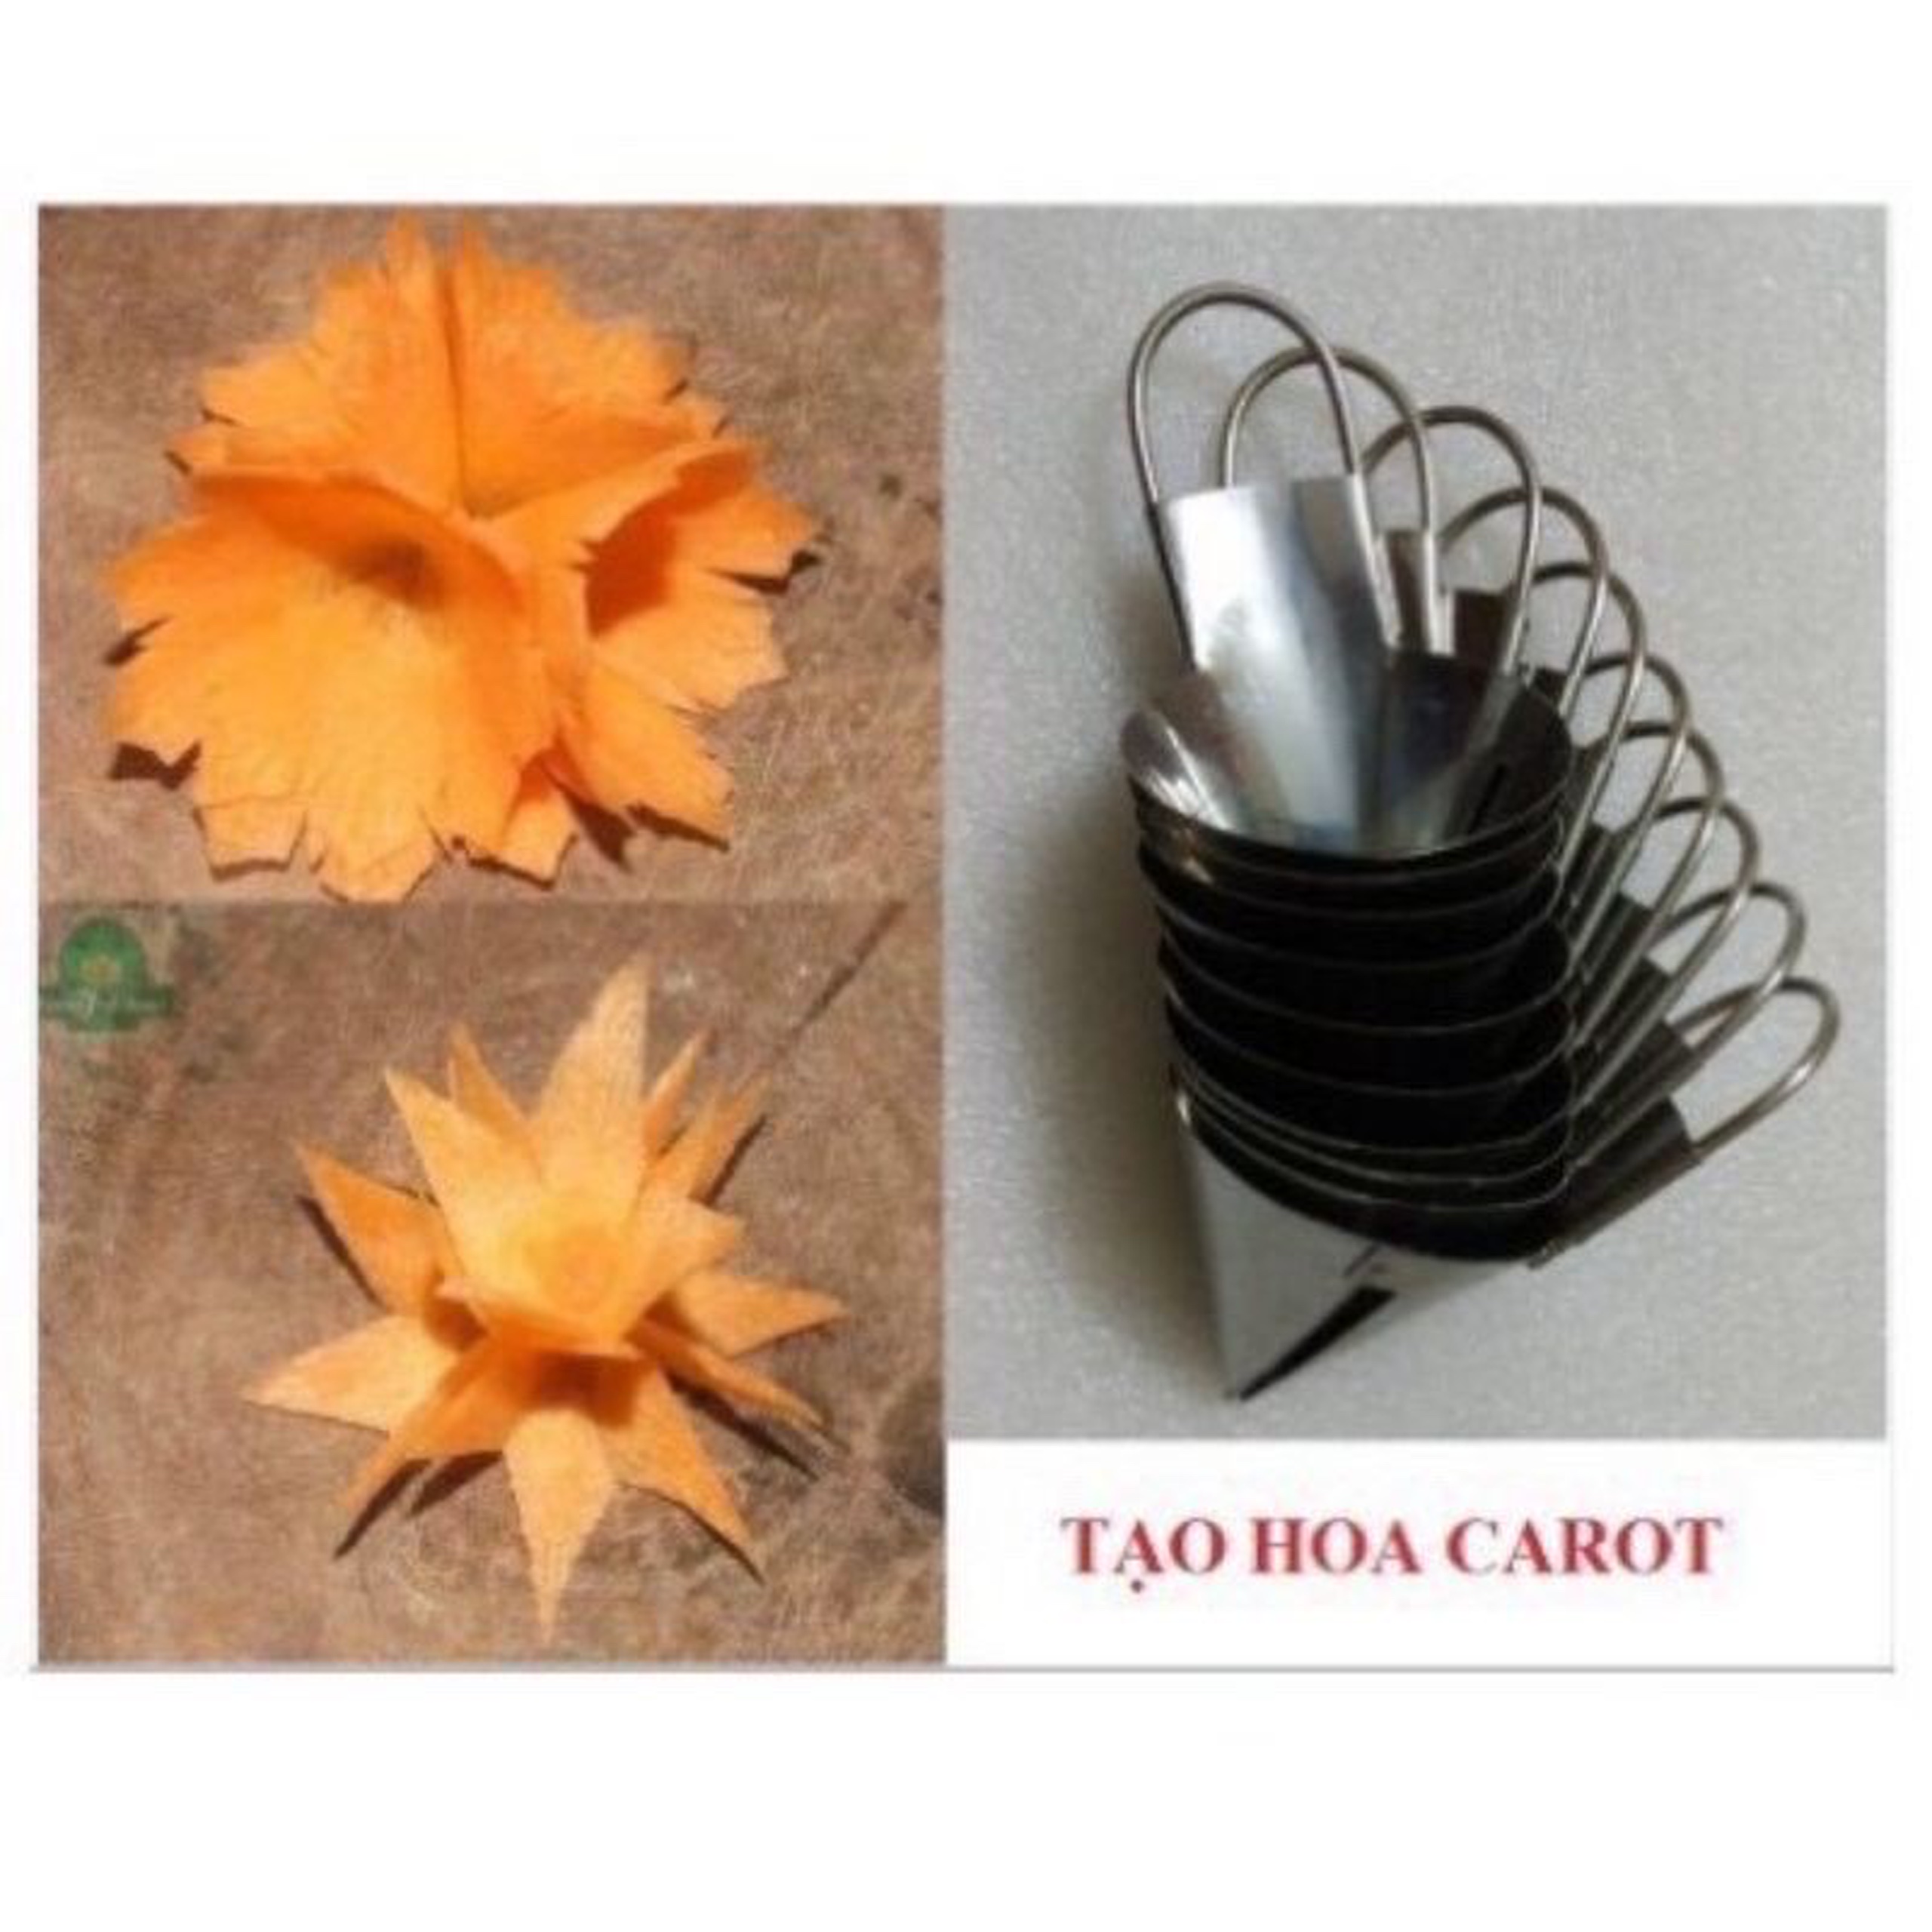 Dụng cụ xoáy tỉa hoa cà rốt inox đẹp giá rẻ tiện dụng